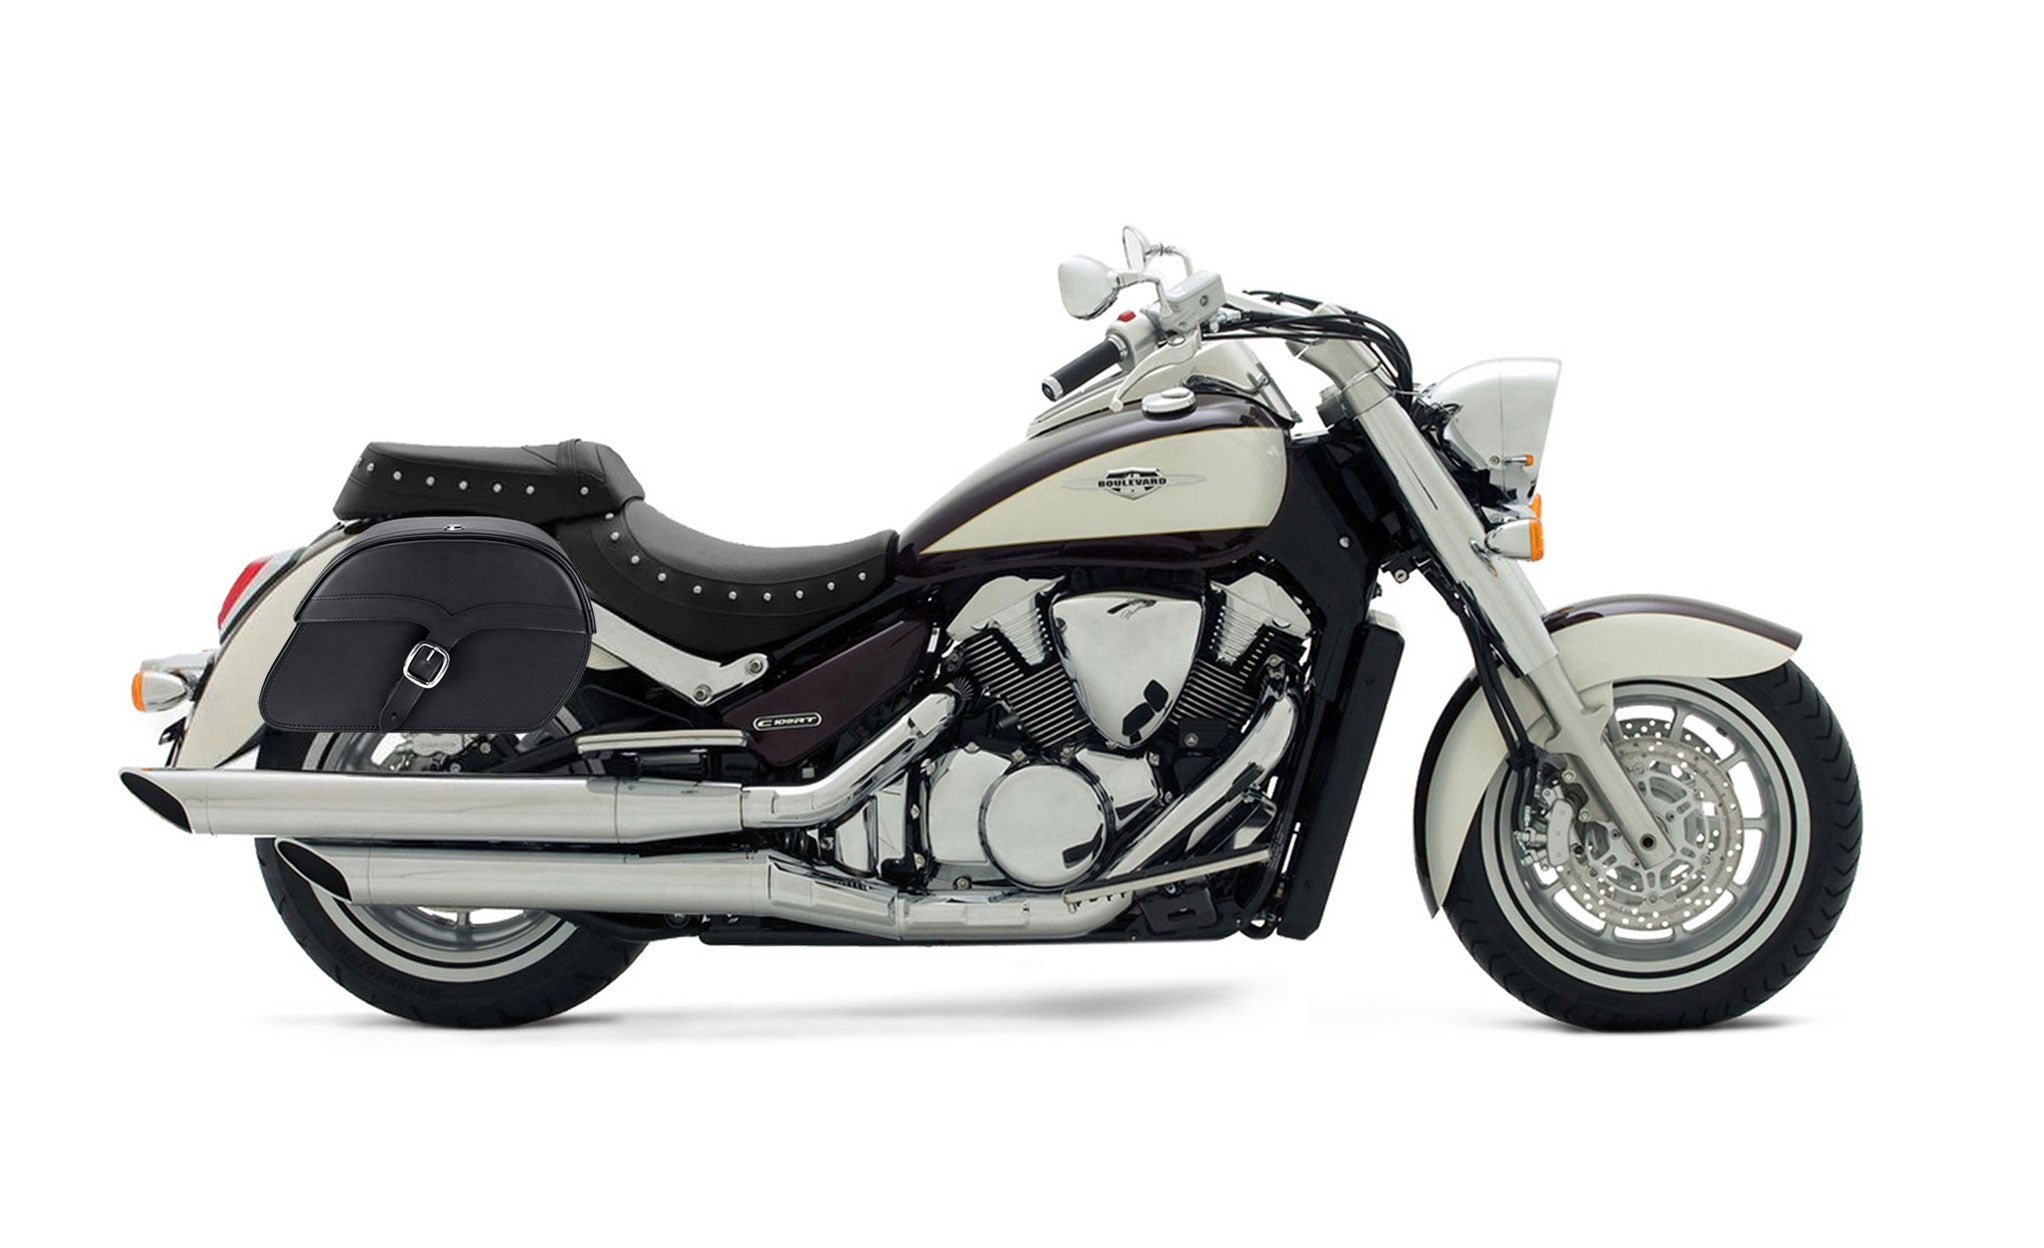 Viking Vintage Medium Suzuki Boulevard C109 Leather Motorcycle Saddlebags on Bike Photo @expand